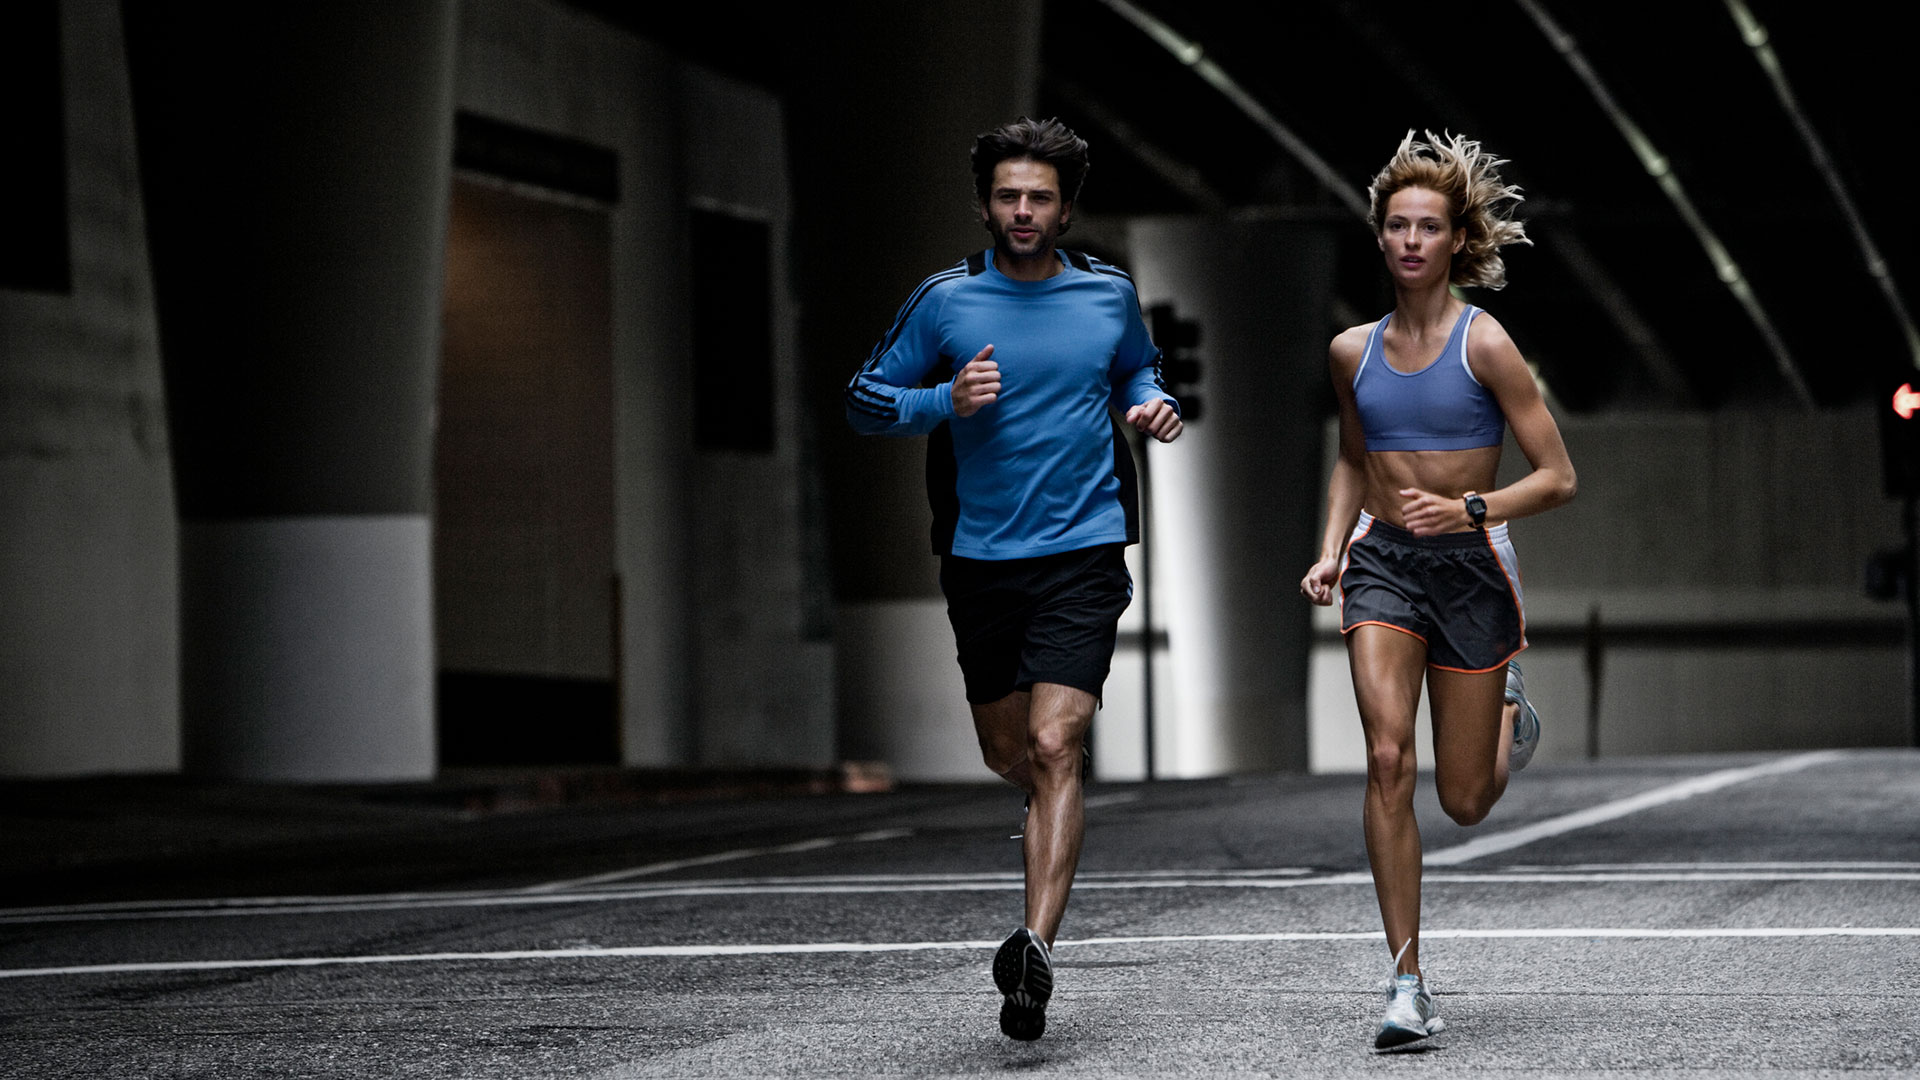 No poner excusas por la falta de indumentaria o zapatillas específicas para running, al principio lo importante es salir a entrenar (Getty)